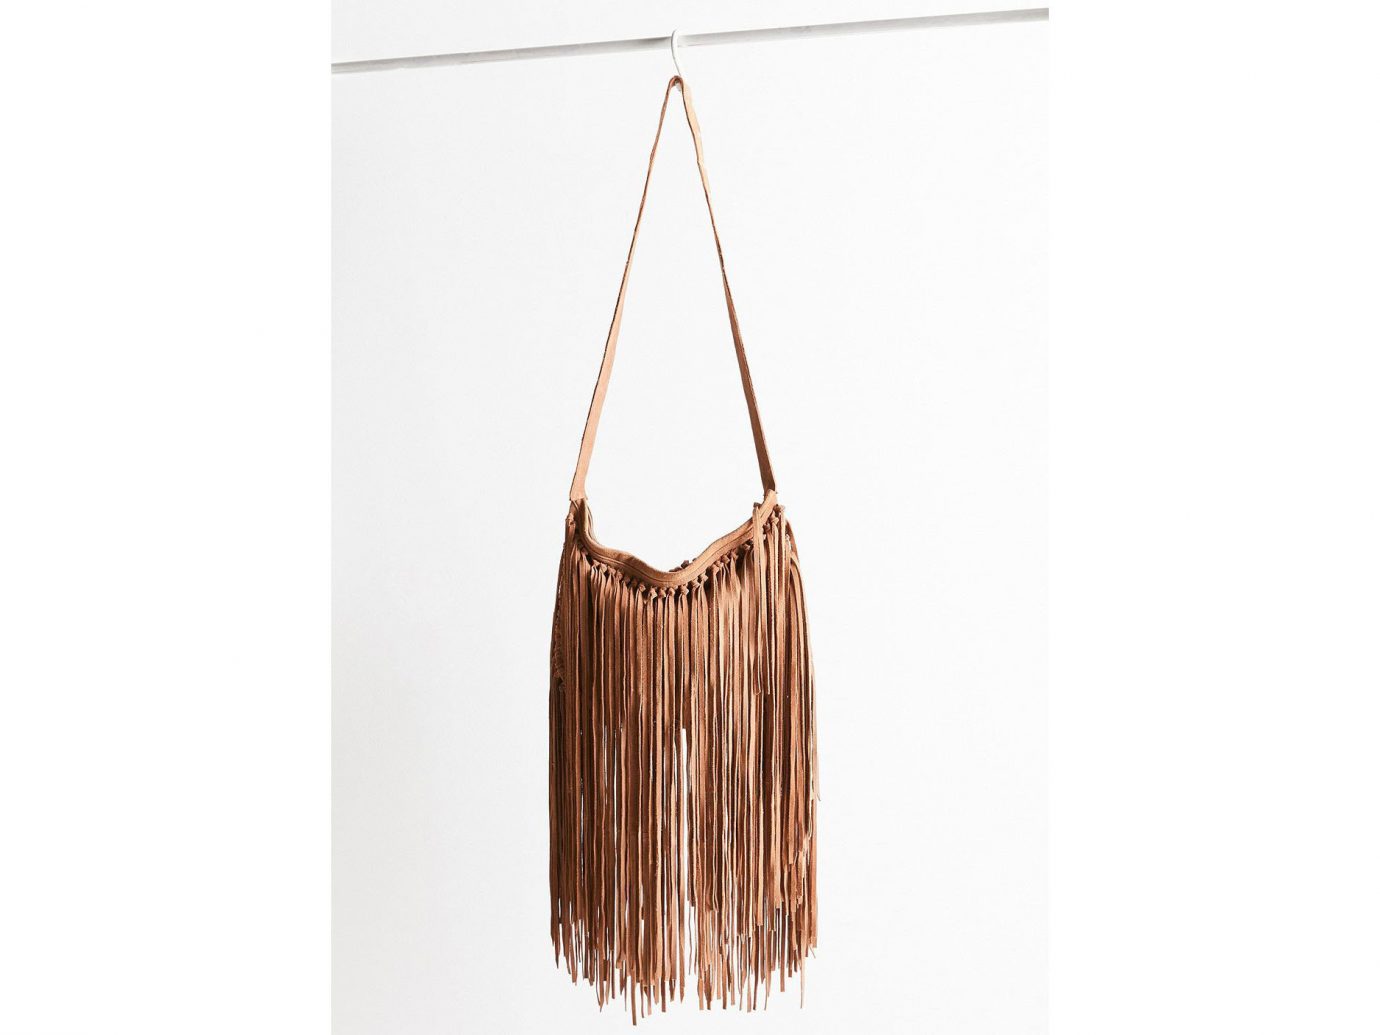 Travel Shop Travel Trends bag handbag shoulder bag brown product clothes hanger product design beige metal leather